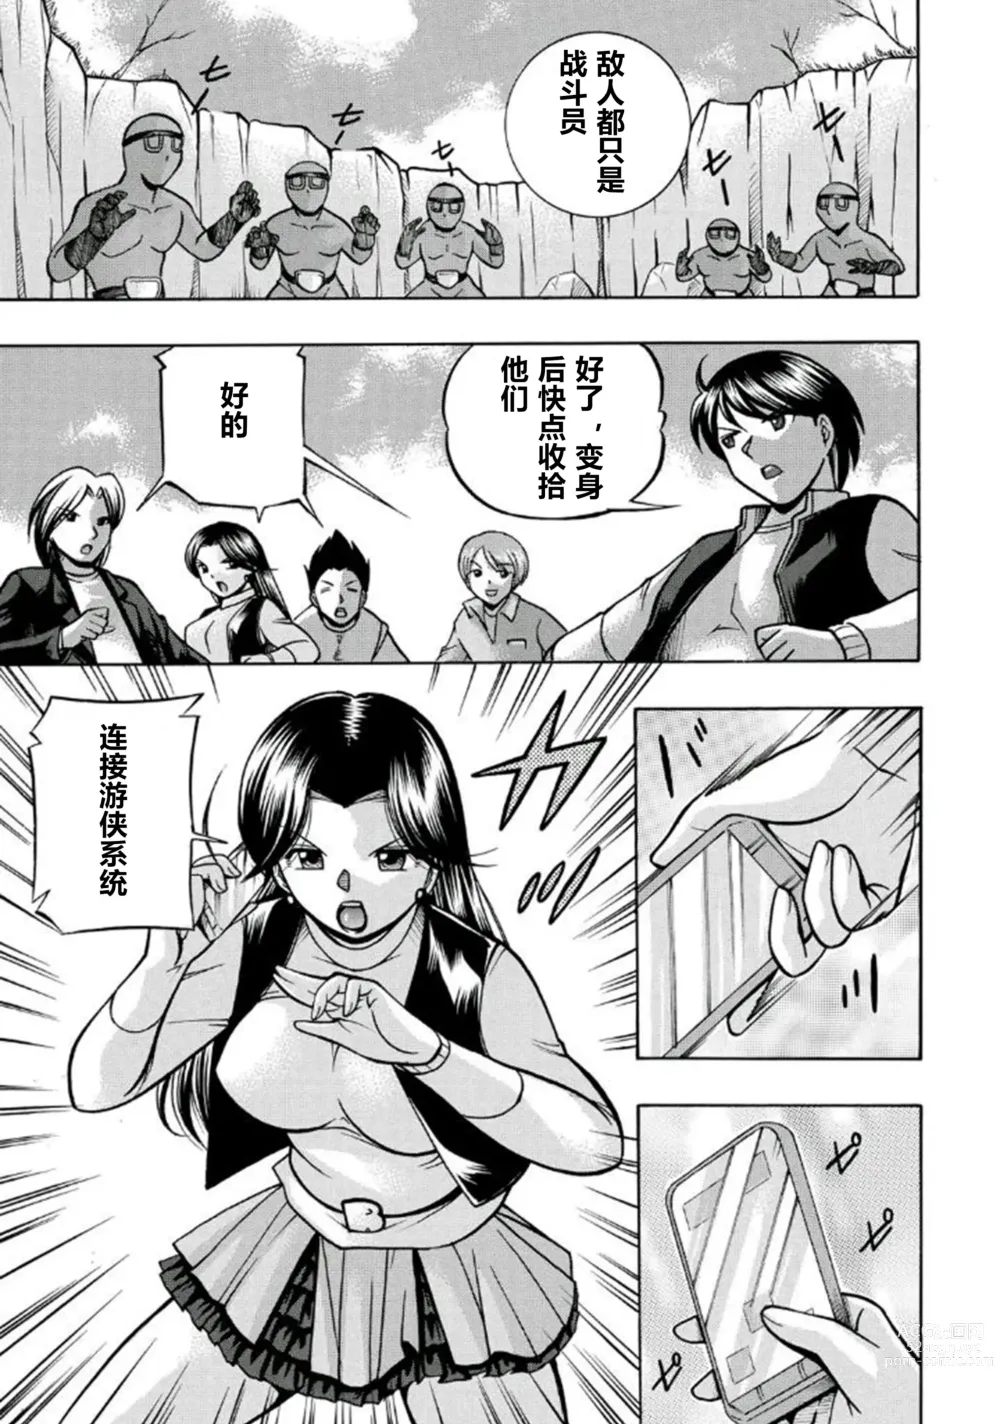 Page 6 of manga Pink Kuppuku - Pink Surrender